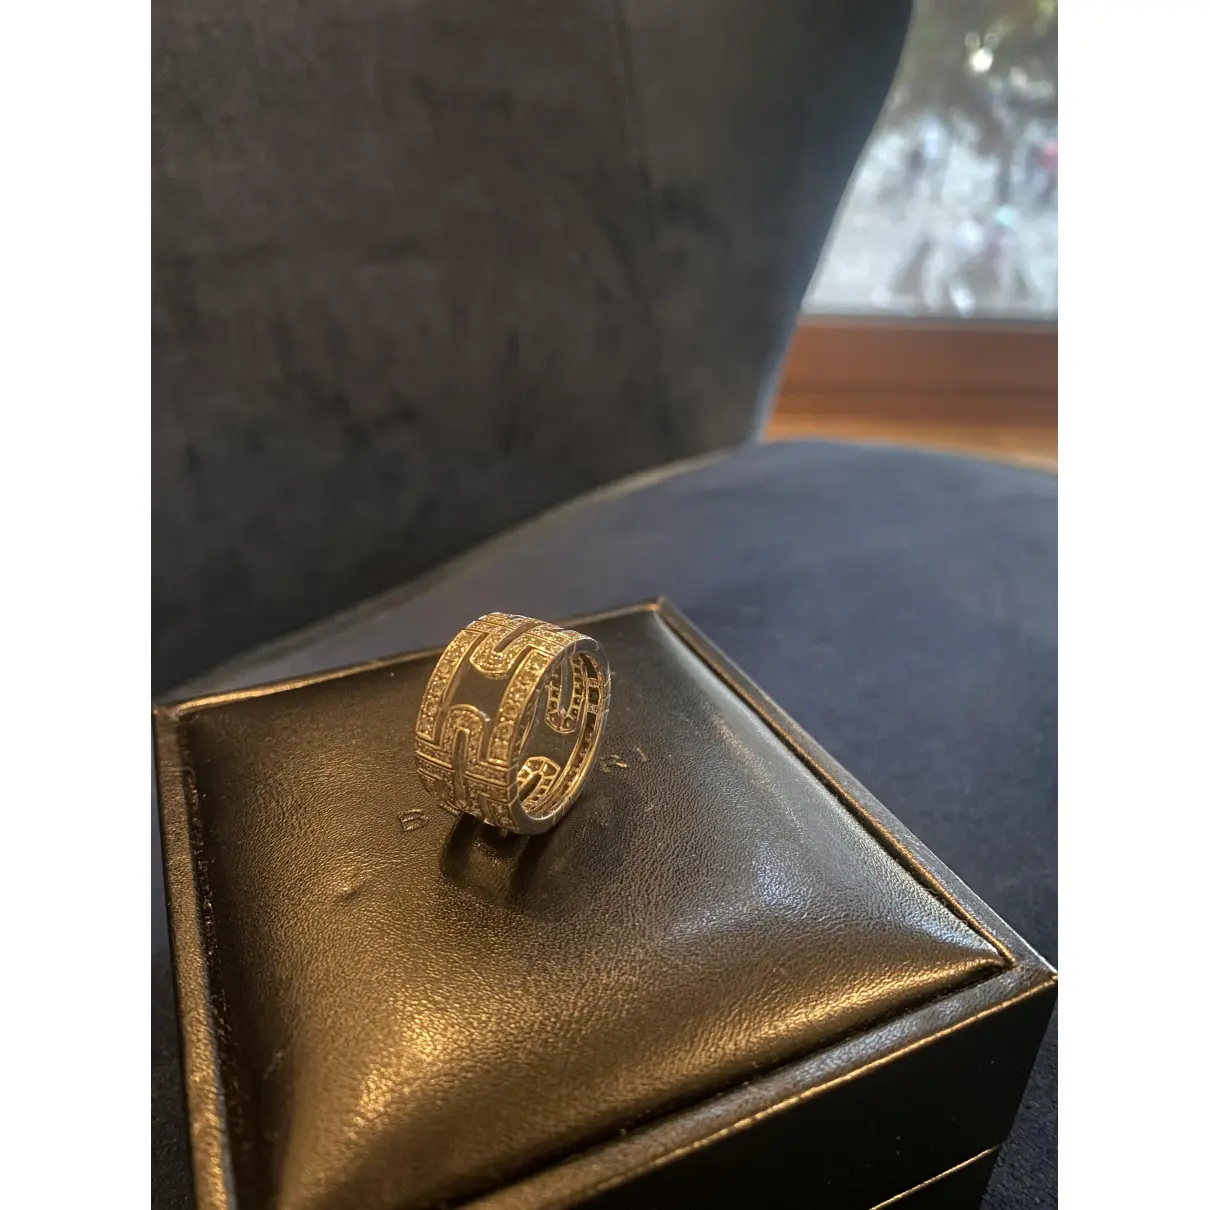 Buy Bvlgari Parentesi white gold ring online - Vintage